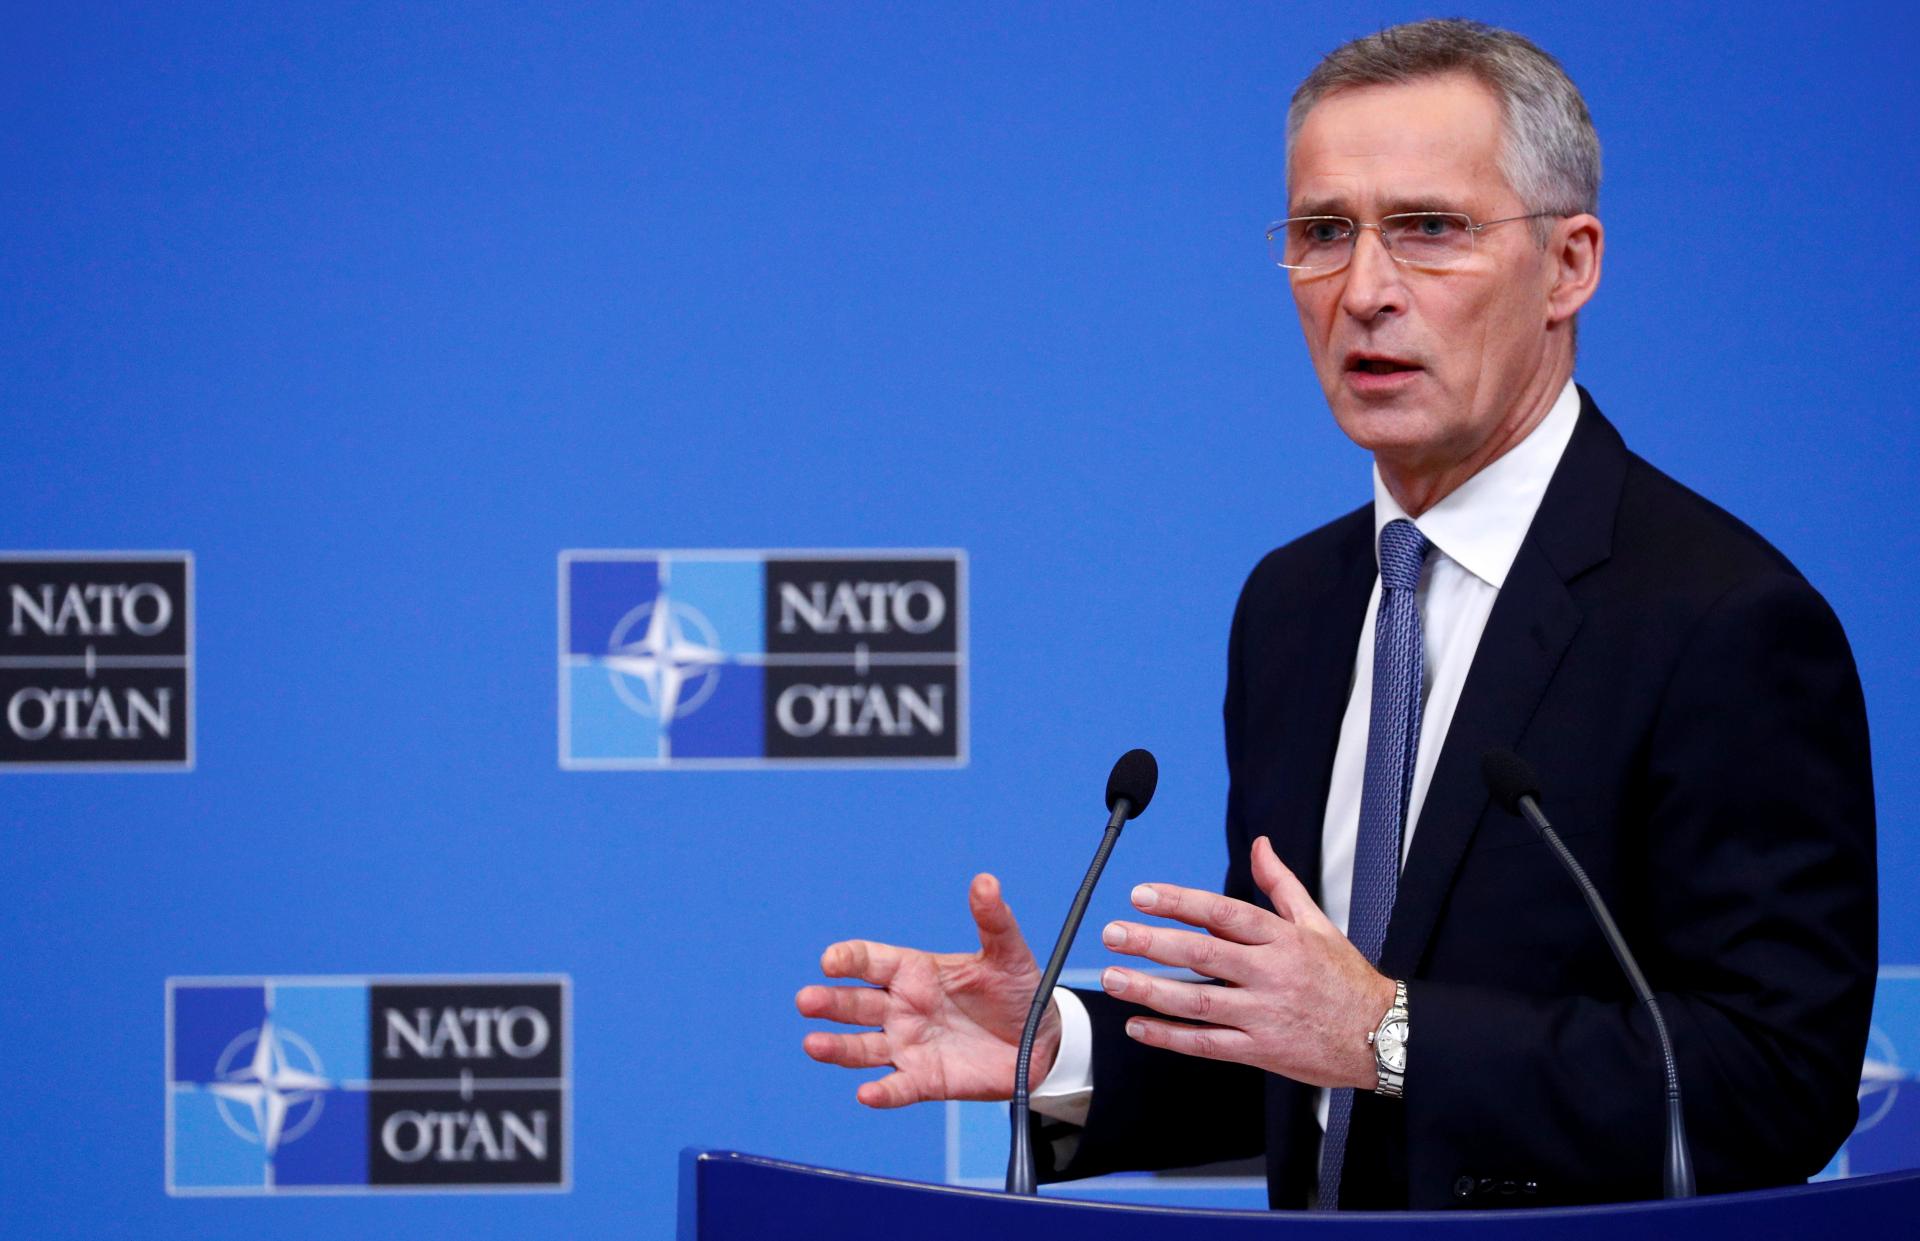 Këtë javë NATO u përgjigjet propozimeve të Rusisë